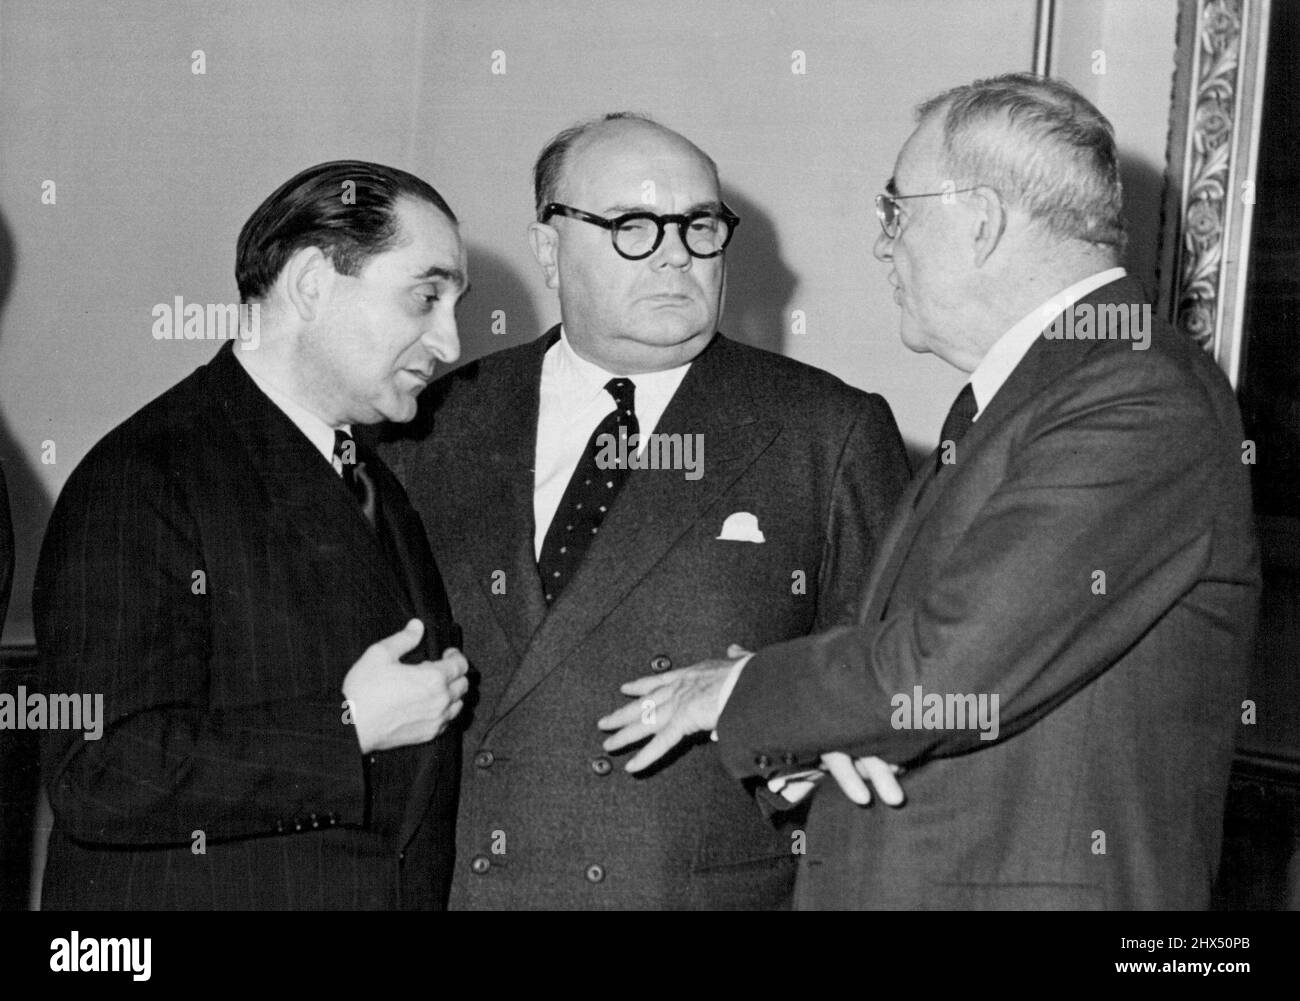 Der historische Pakt, der Deutschland zu einem gleichberechtigten Partner in der westlichen Verteidigung macht, wurde unterzeichnet, aber der französische M. Mendes-France (links), der belgische M. Spaak (Mitte) und der amerikanische Herr Dulles debattieren immer noch über einen Punkt. Vielleicht ist es ein Zweifel in letzter Minute, den der feierlich aussehende M. Mendes-France hat. Aber Mr. Dulles scheint seine Aussage zu machen, M. Spaak hat diesen Yes-you-have-something-there' Look. 4. Oktober 1954. (Foto von Daily Mirror) Stockfoto